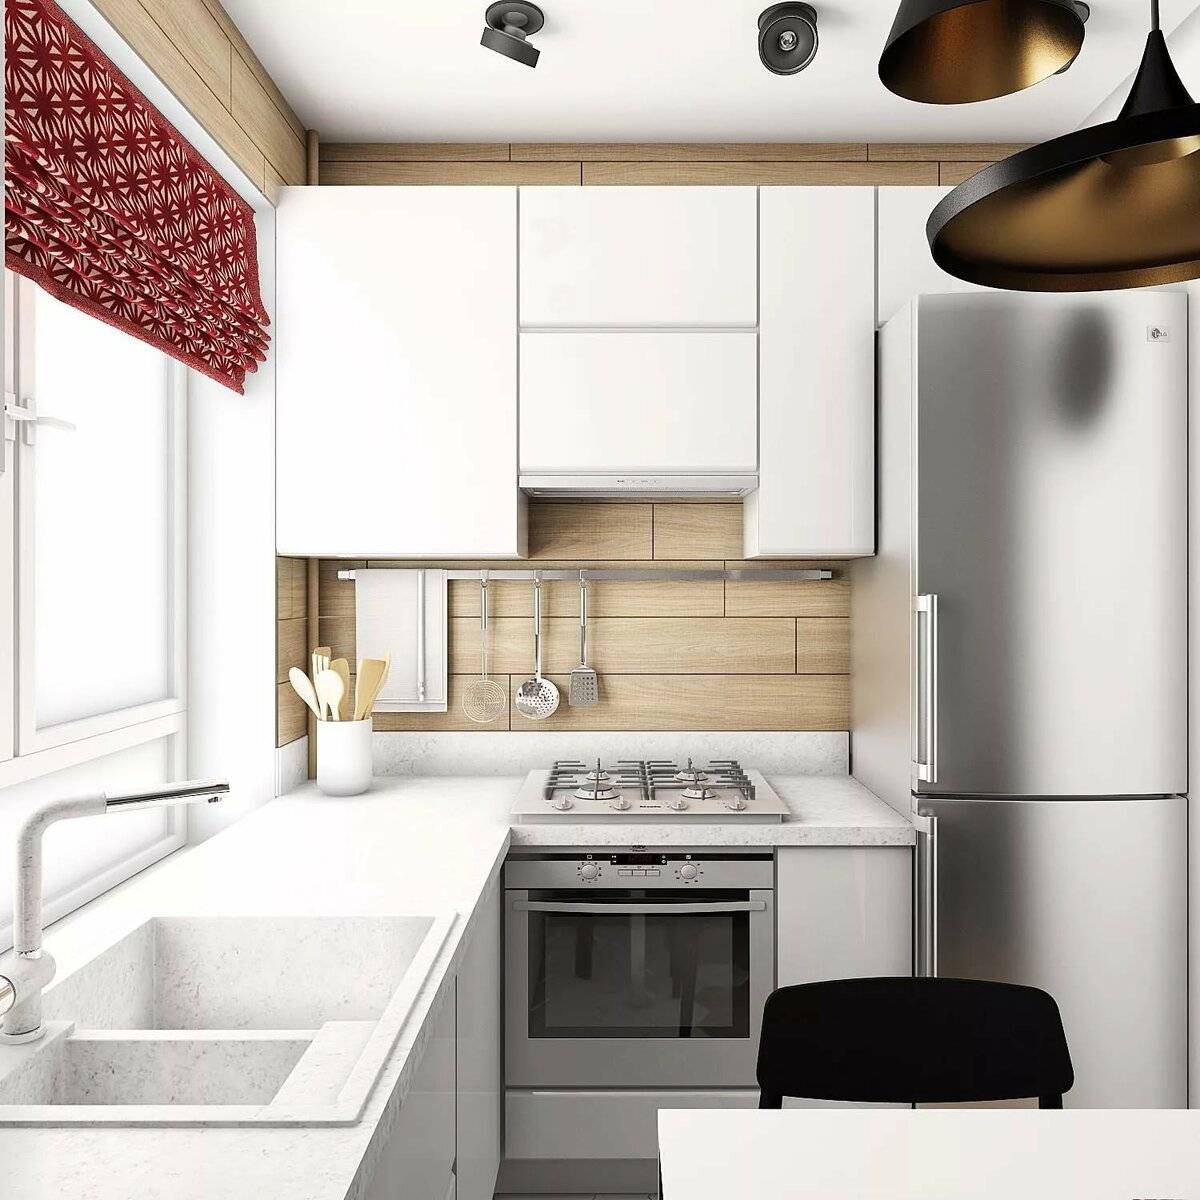 Кухня 4 на 4 метра: фото дизайна маленькой кухни с холодильником